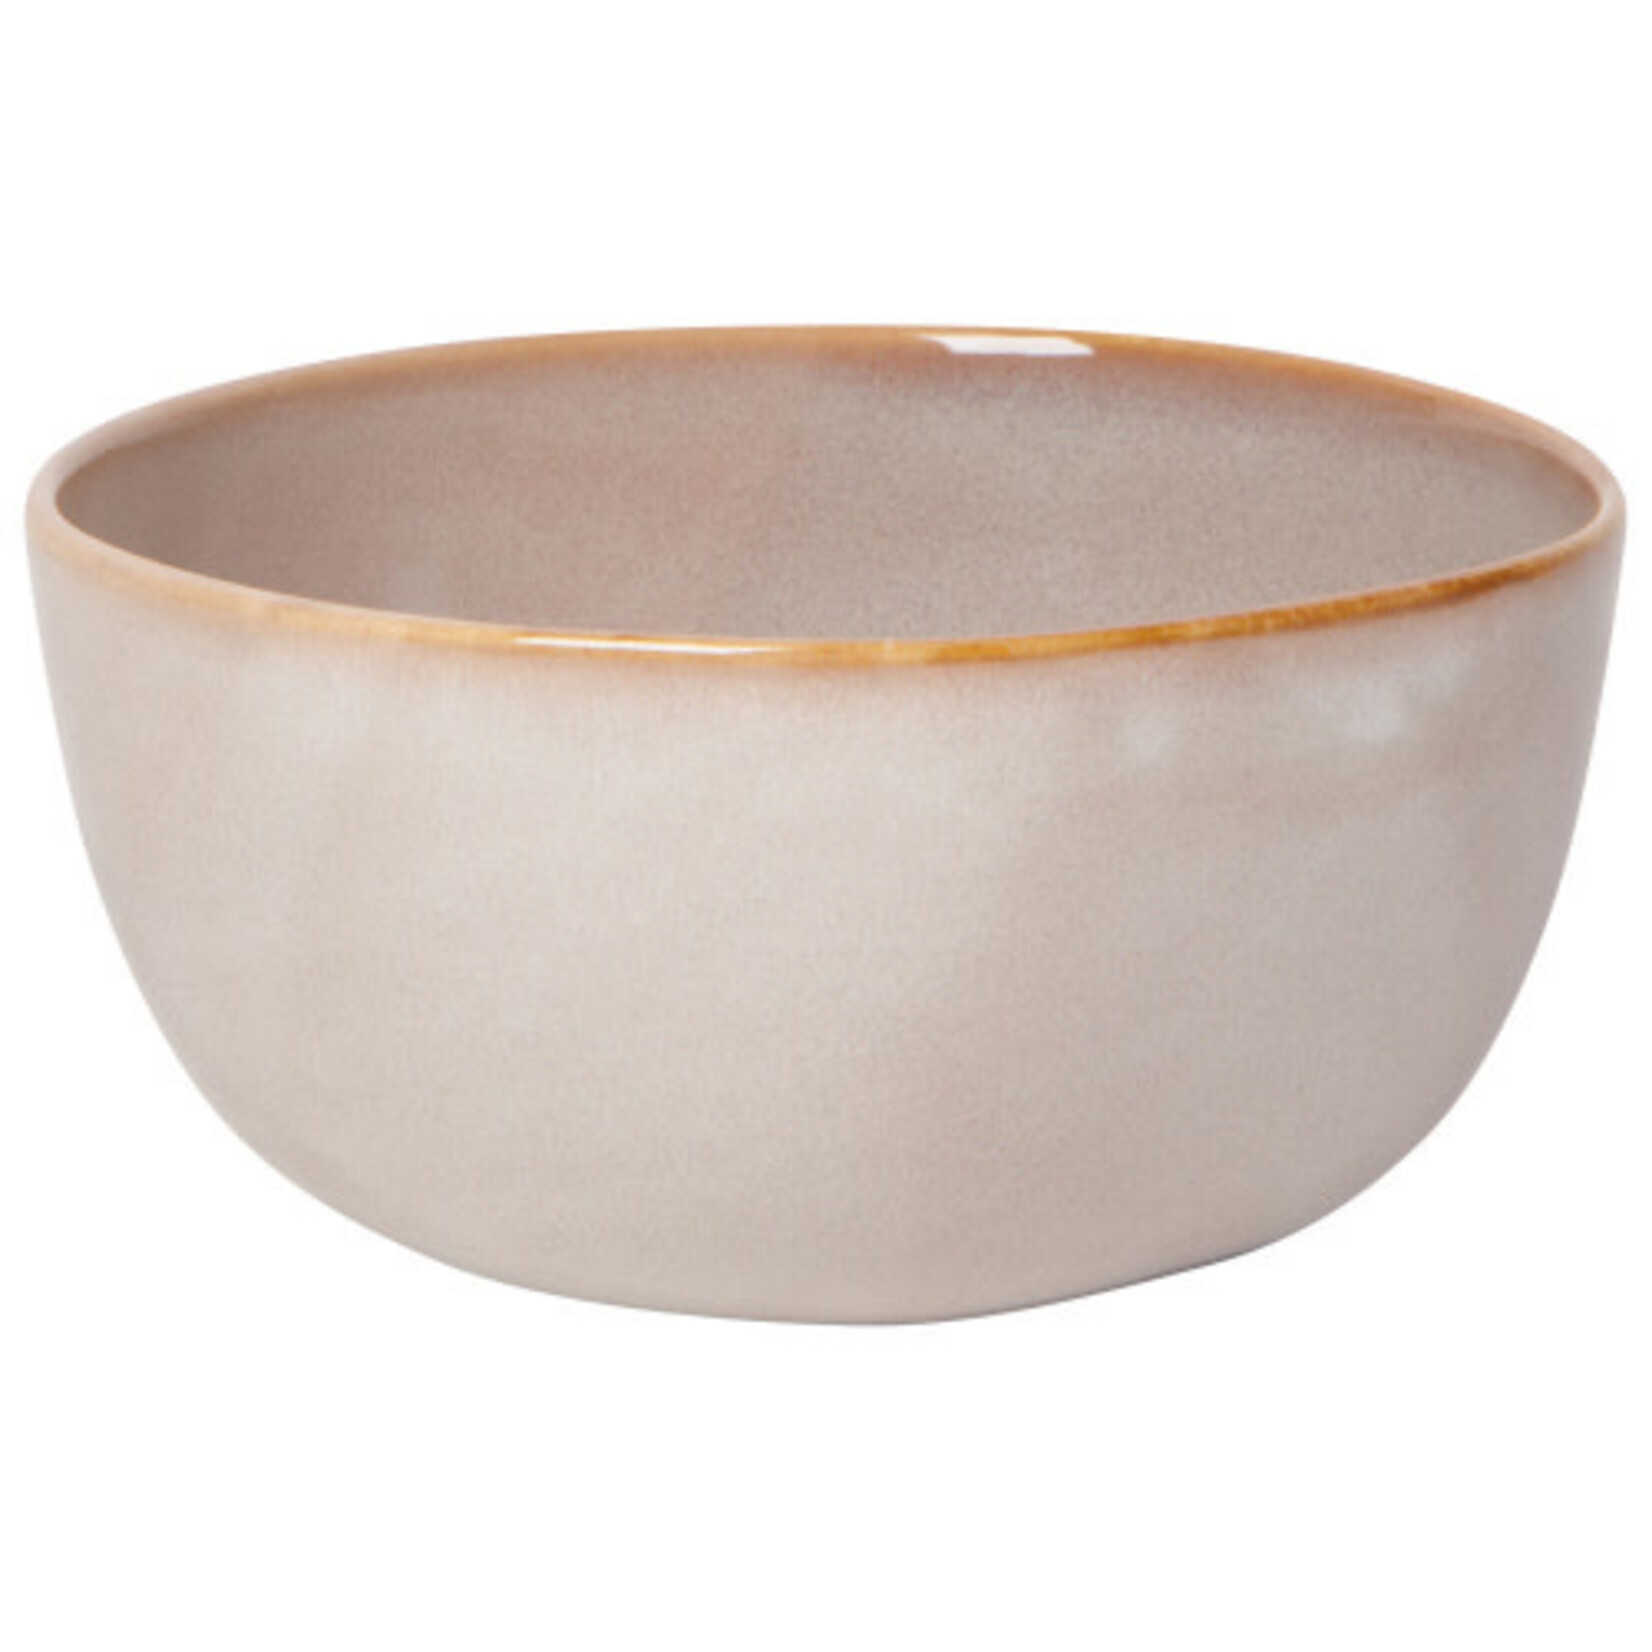 Danica Soup 5.75 bowl Nomad